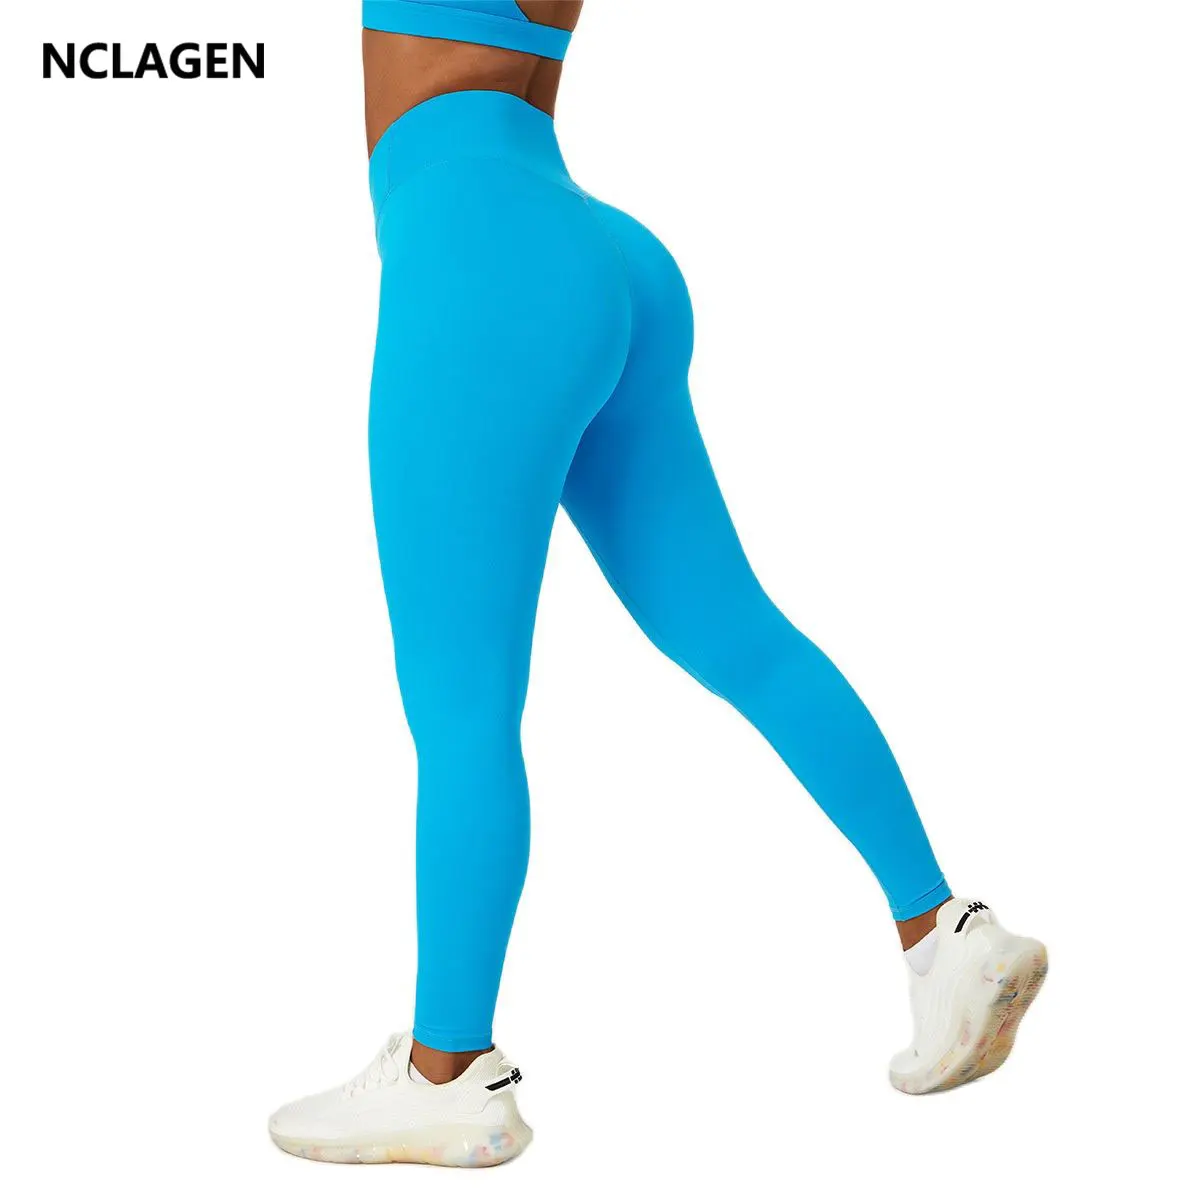 Женские леггинсы для фитнеса NCLAGEN Crossover Штаны для йоги с высокой талией, подтягивающие бедра, эластичные дышащие спортивные колготки для занятий бегом в тренажерном зале